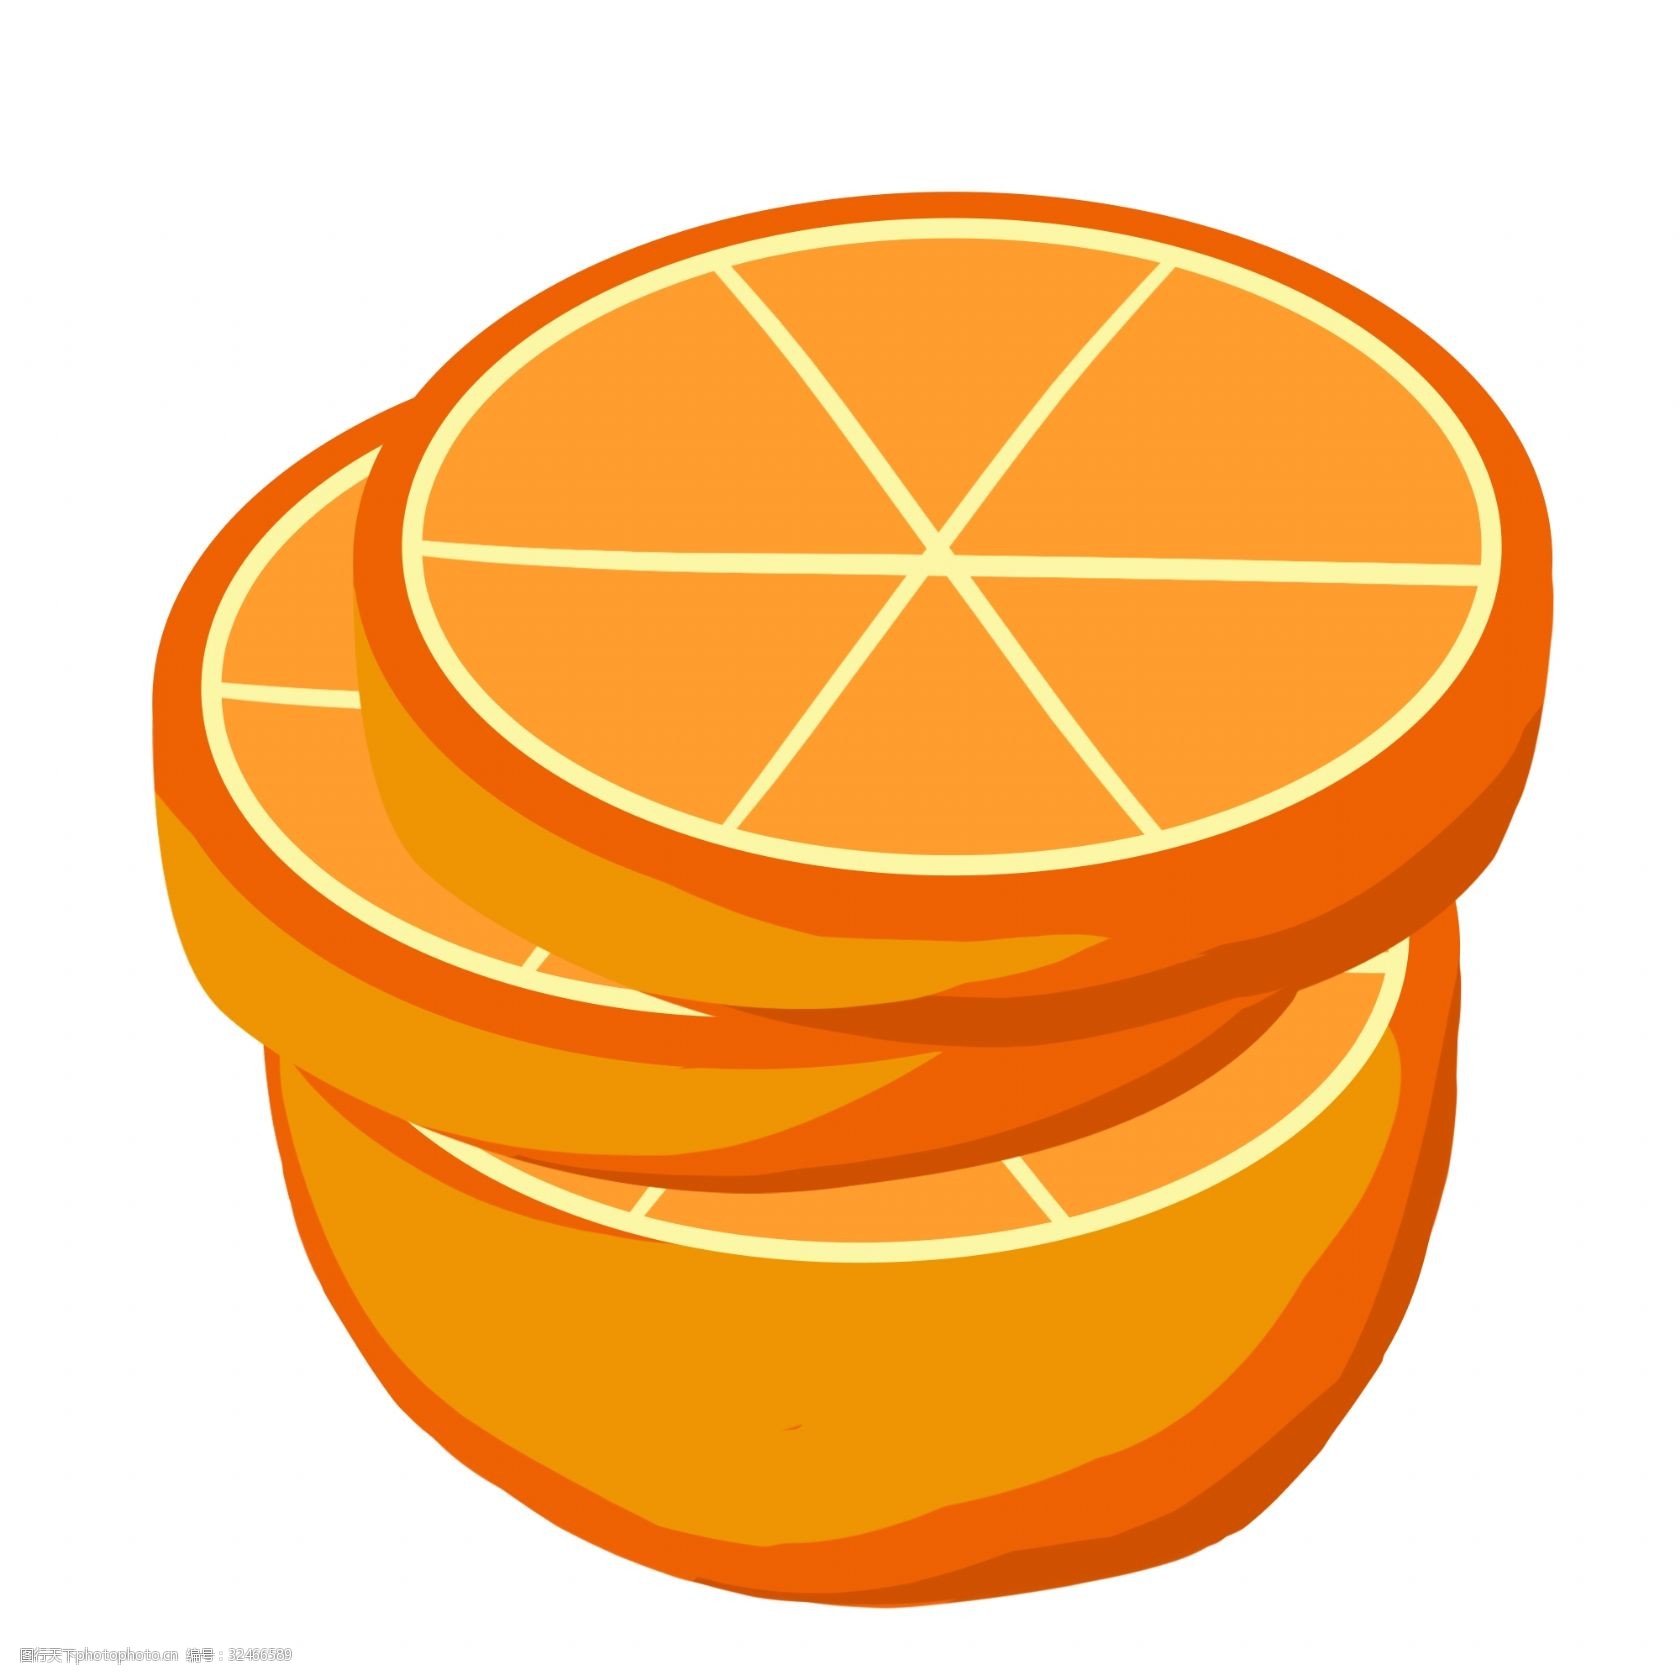 橙子平面构成图片